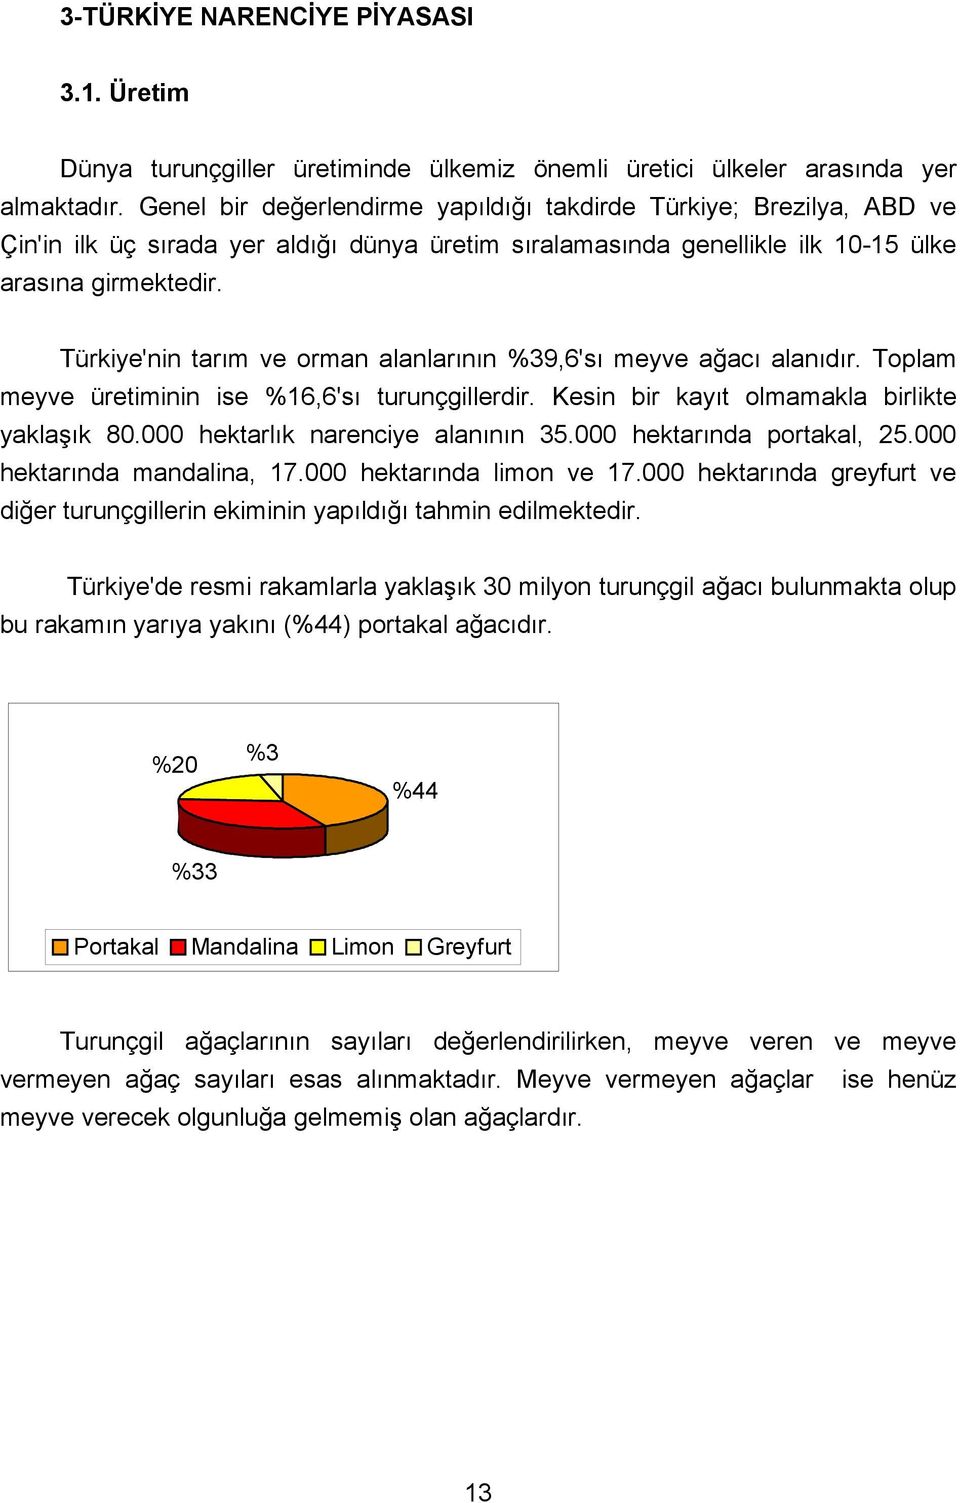 Türkiye'nin tarõm ve orman alanlarõnõn %39,6'sõ meyve ağacõ alanõdõr. Toplam meyve üretiminin ise %16,6'sõ turunçgillerdir. Kesin bir kayõt olmamakla birlikte yaklaşõk 80.